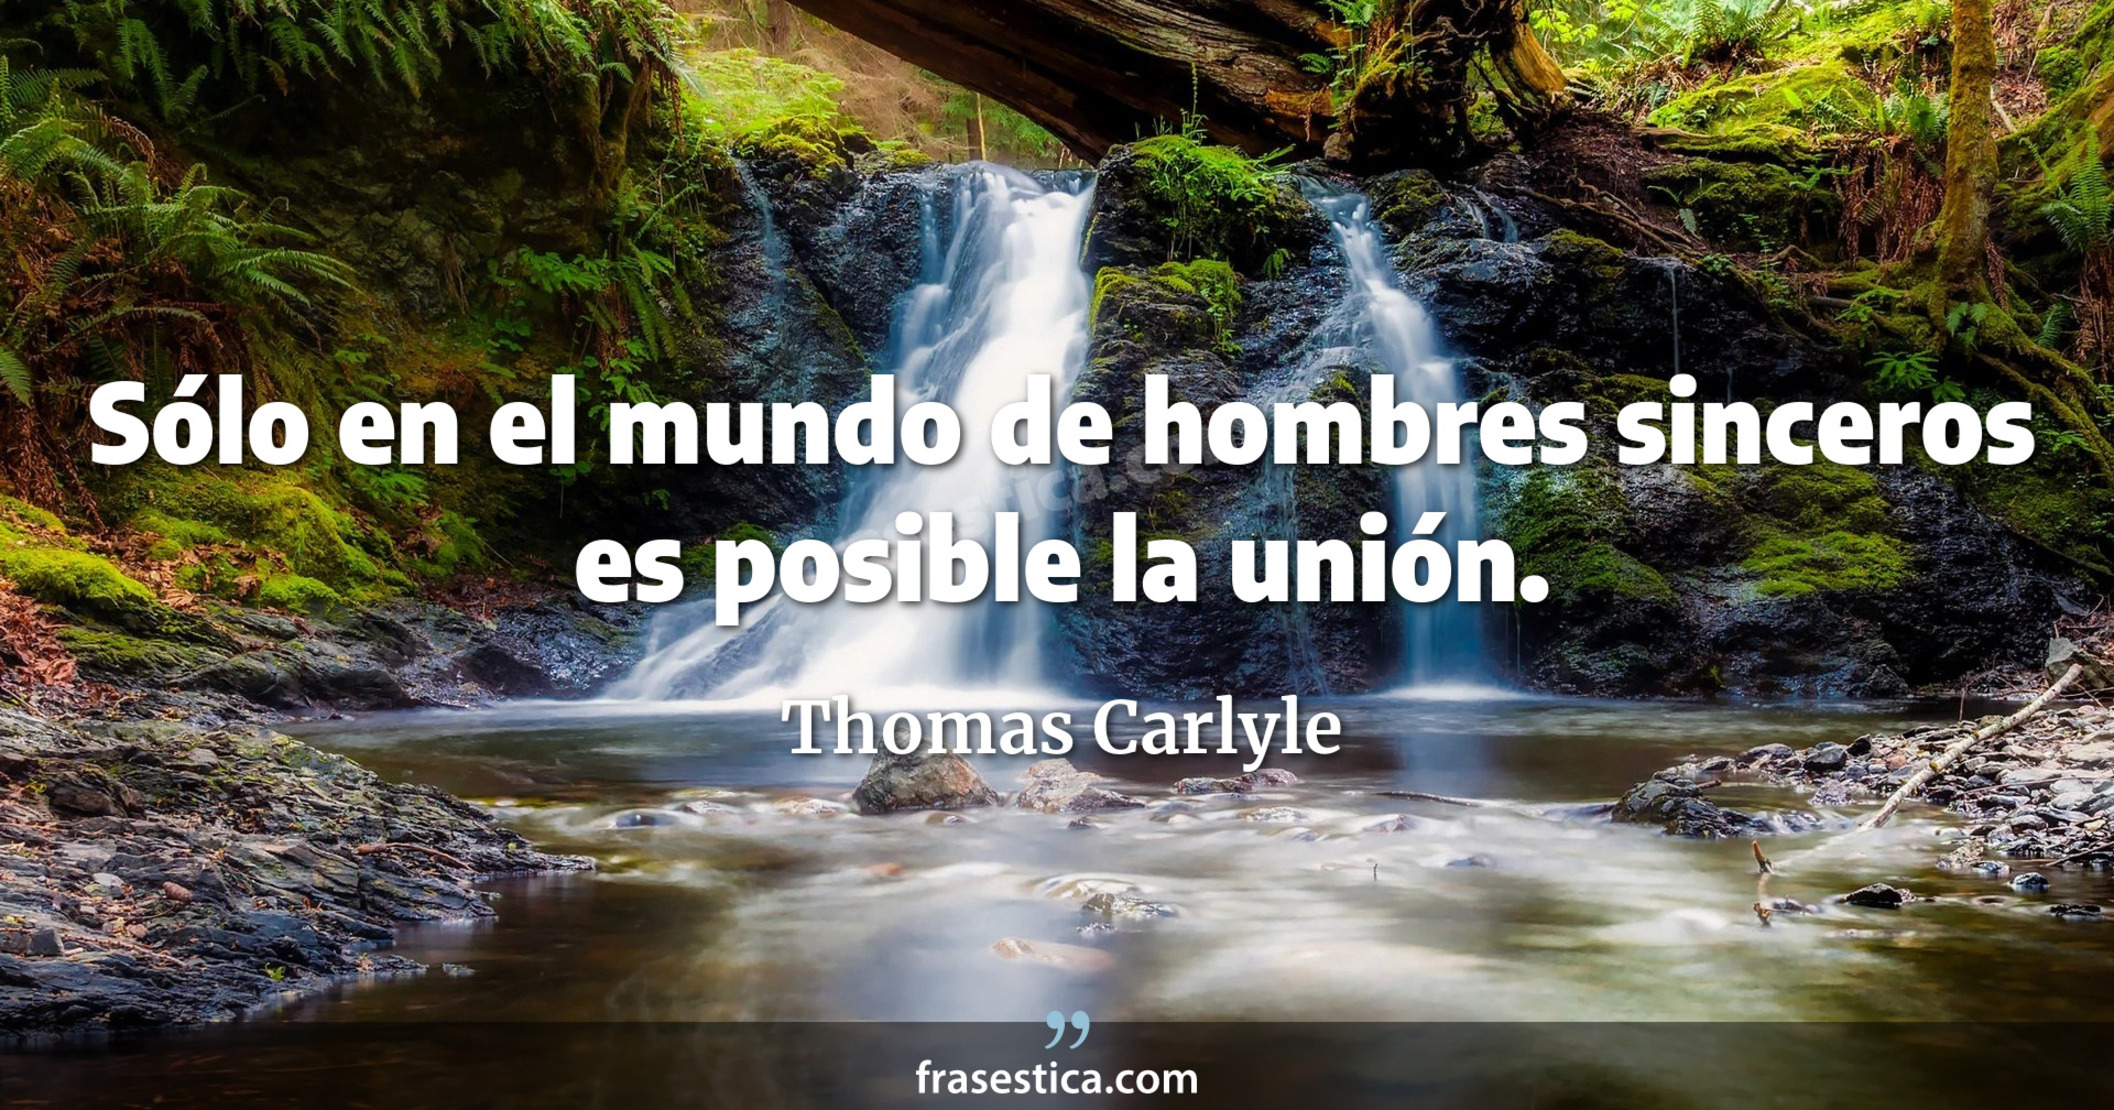 Sólo en el mundo de hombres sinceros es posible la unión. - Thomas Carlyle